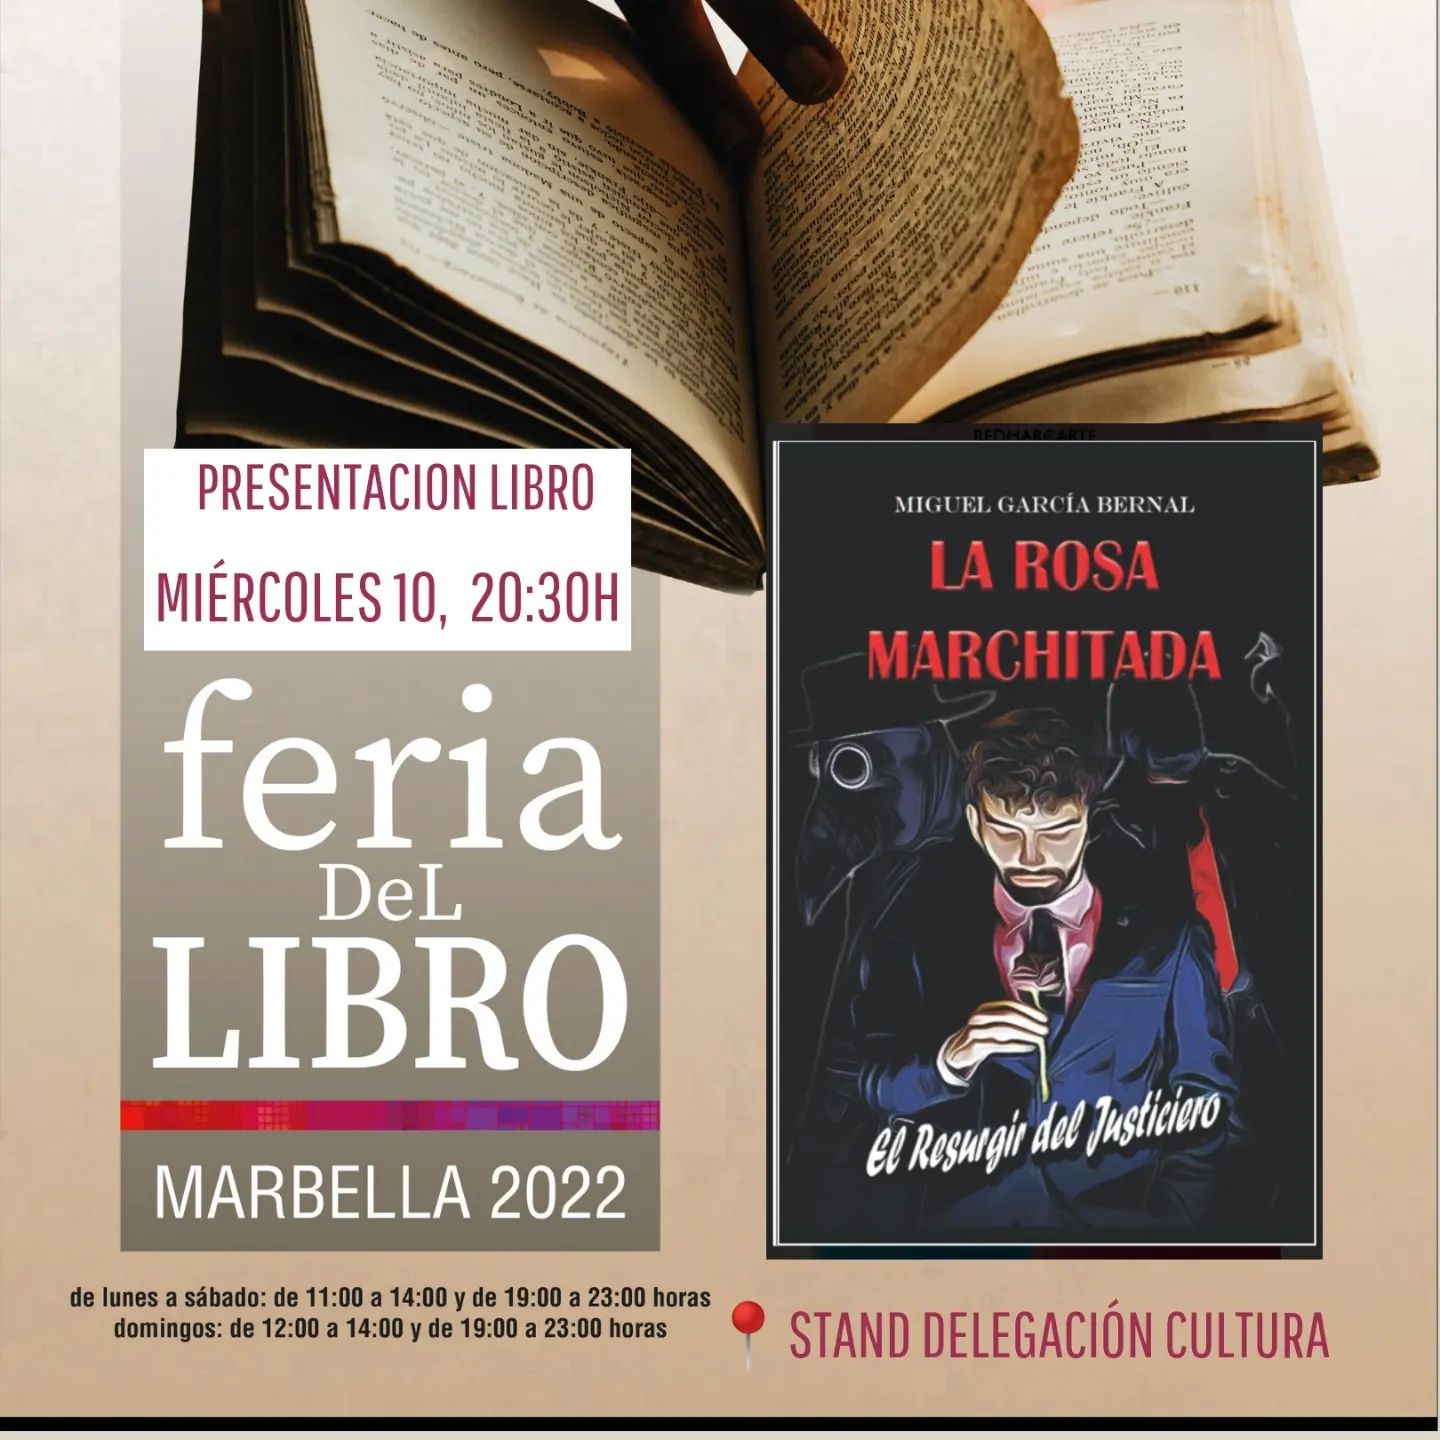 La Feria del Libro de Marbella encara la última semana con presentaciones de libros y talleres infantiles